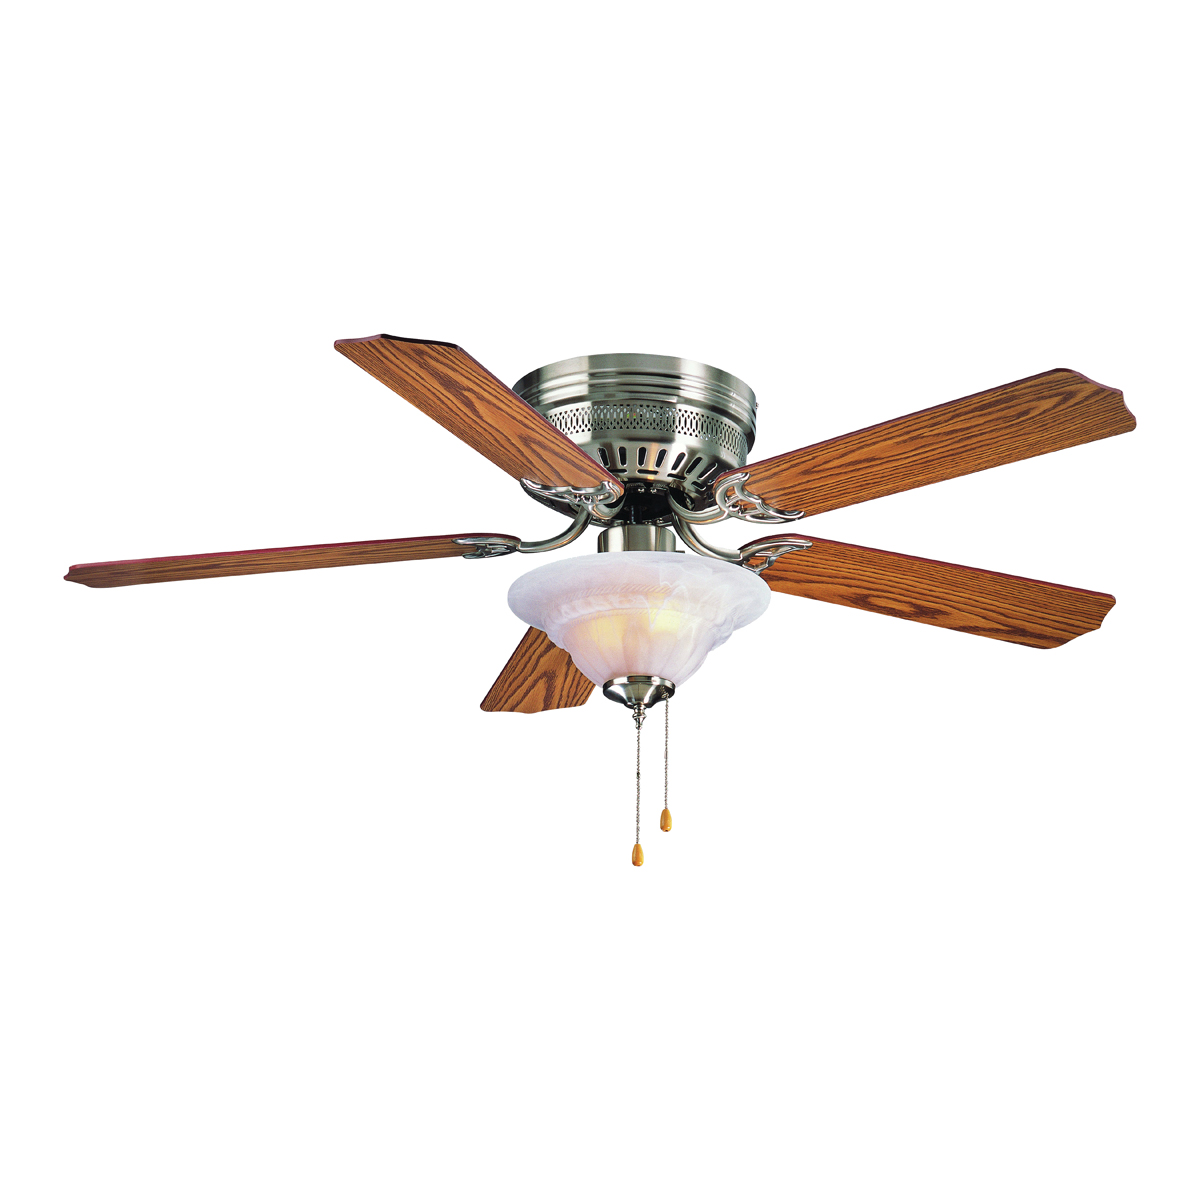 Boston Harbor Ceiling Fan, 5-Blade, Oak/Walnut Blade, 52 in Sweep, MDF Blade, 3-Speed